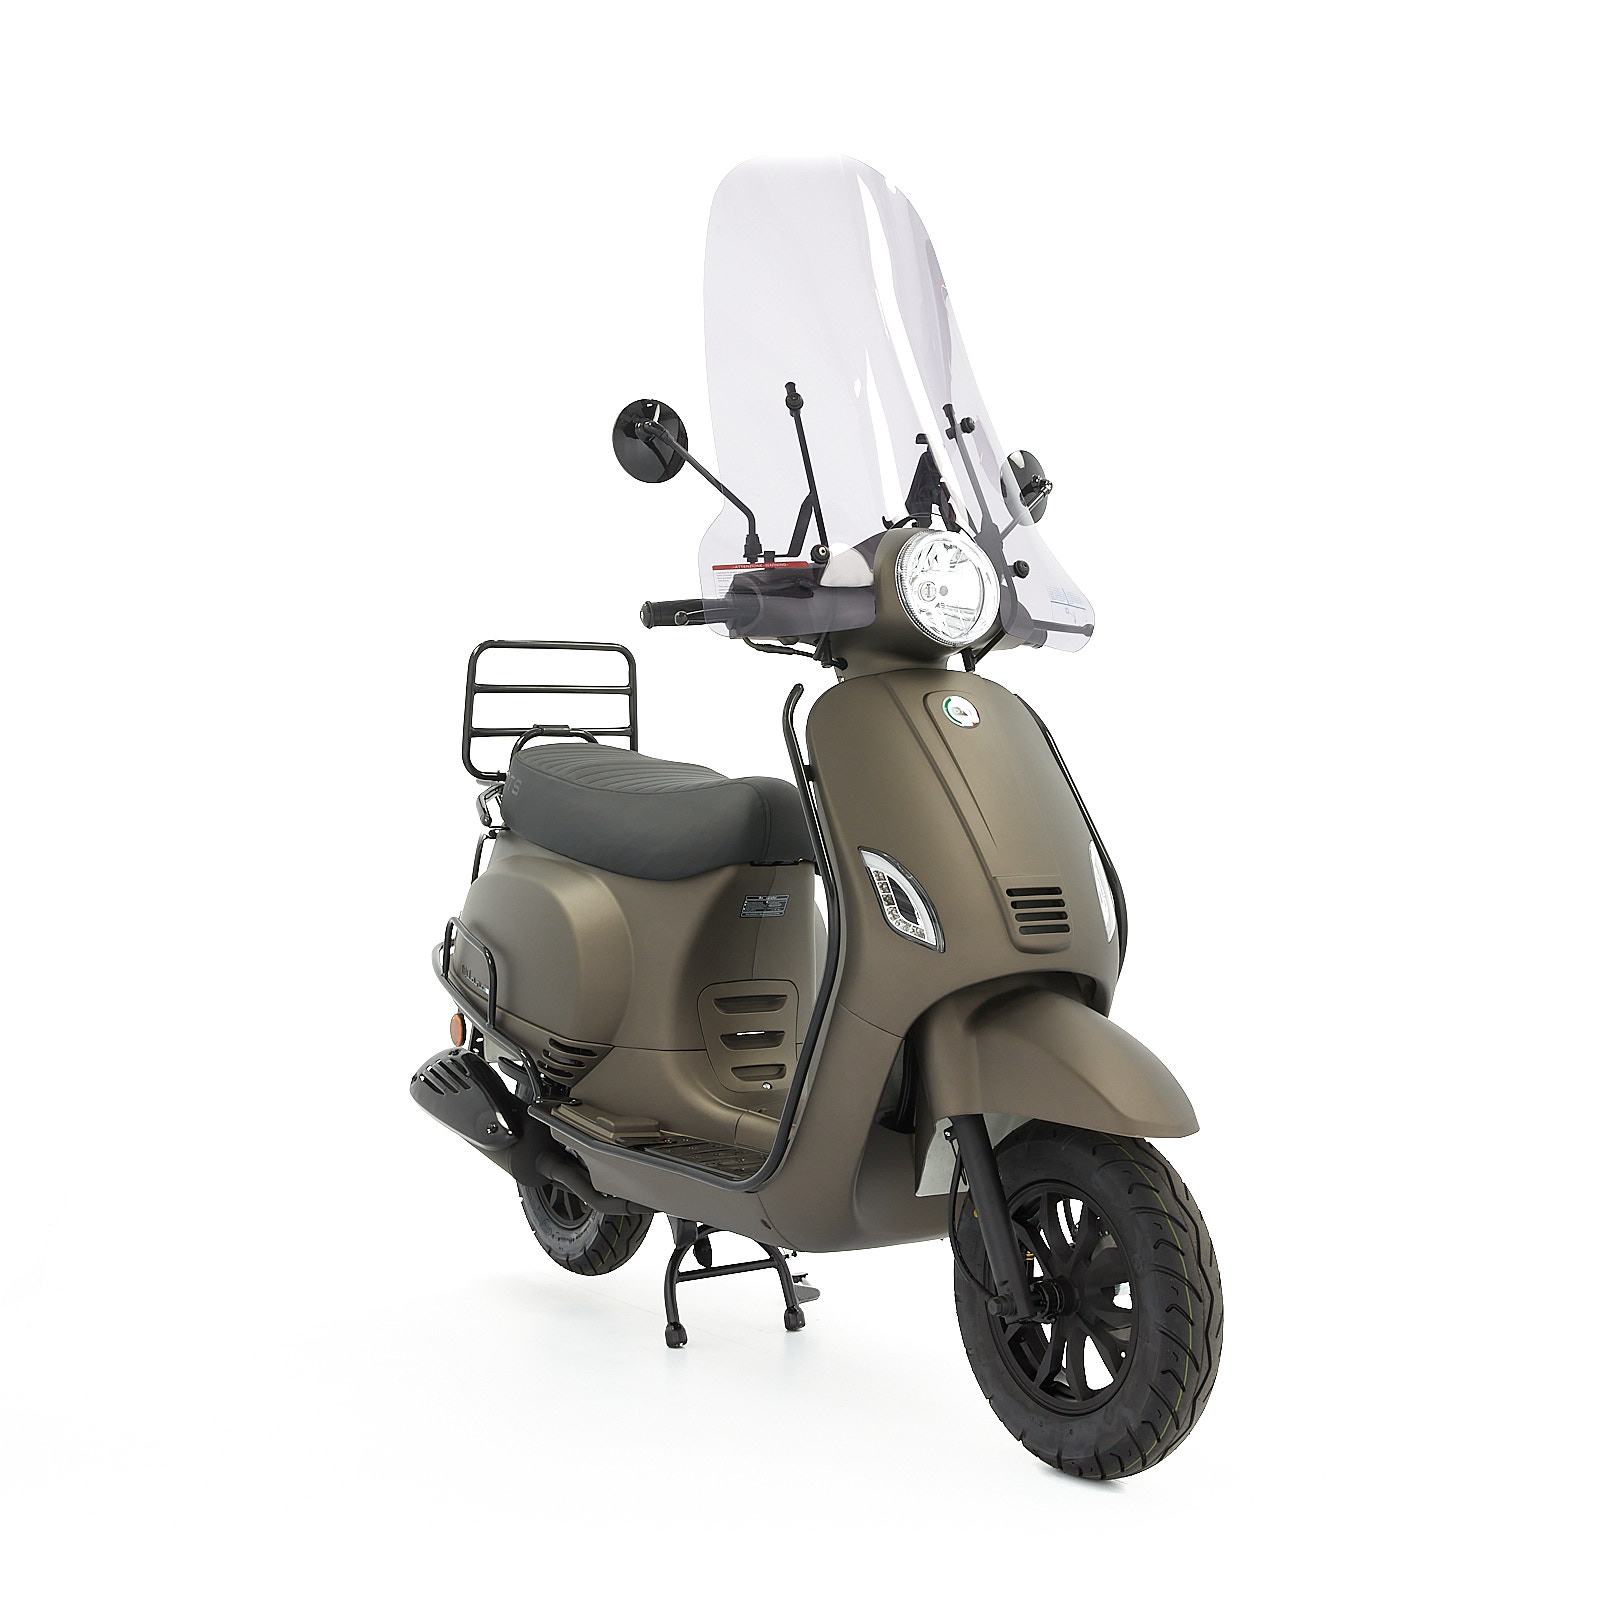 Rusteloos zuigen druiven DTS Milano limited Mat titanium scooter kopen bij Central Scooters